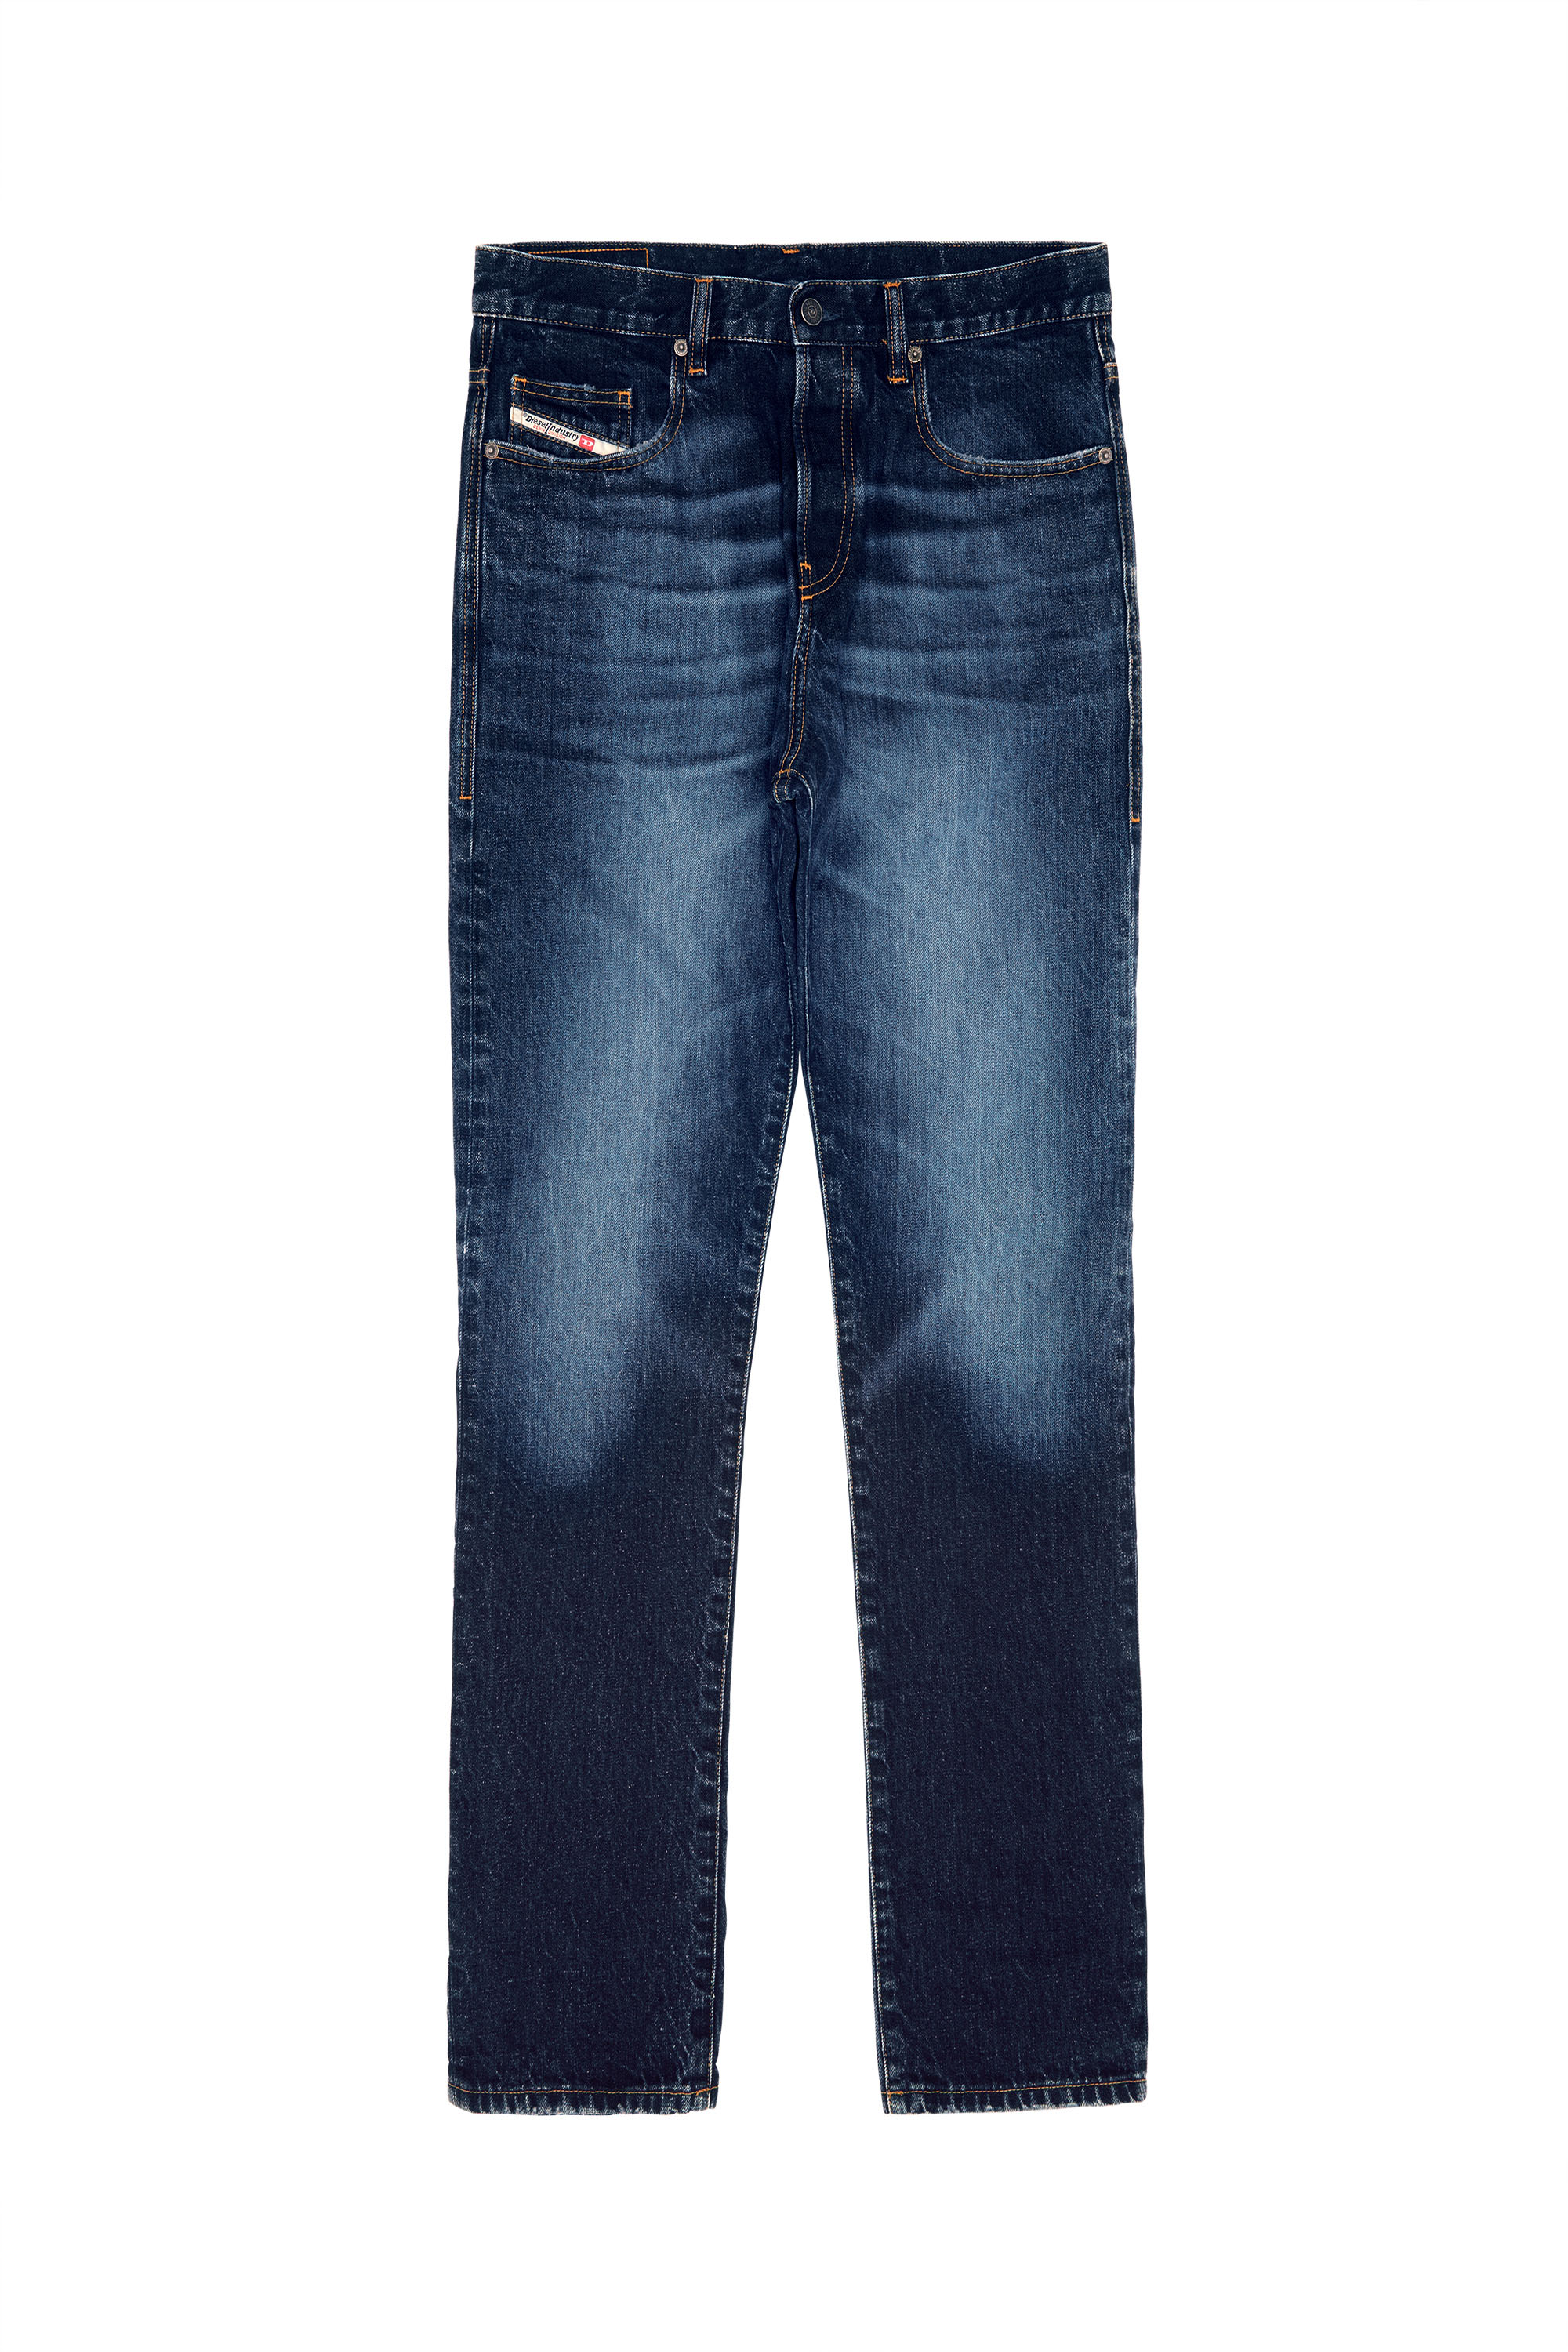 Men's Jeans: Skinny, Slim, Bootcut | Diesel®